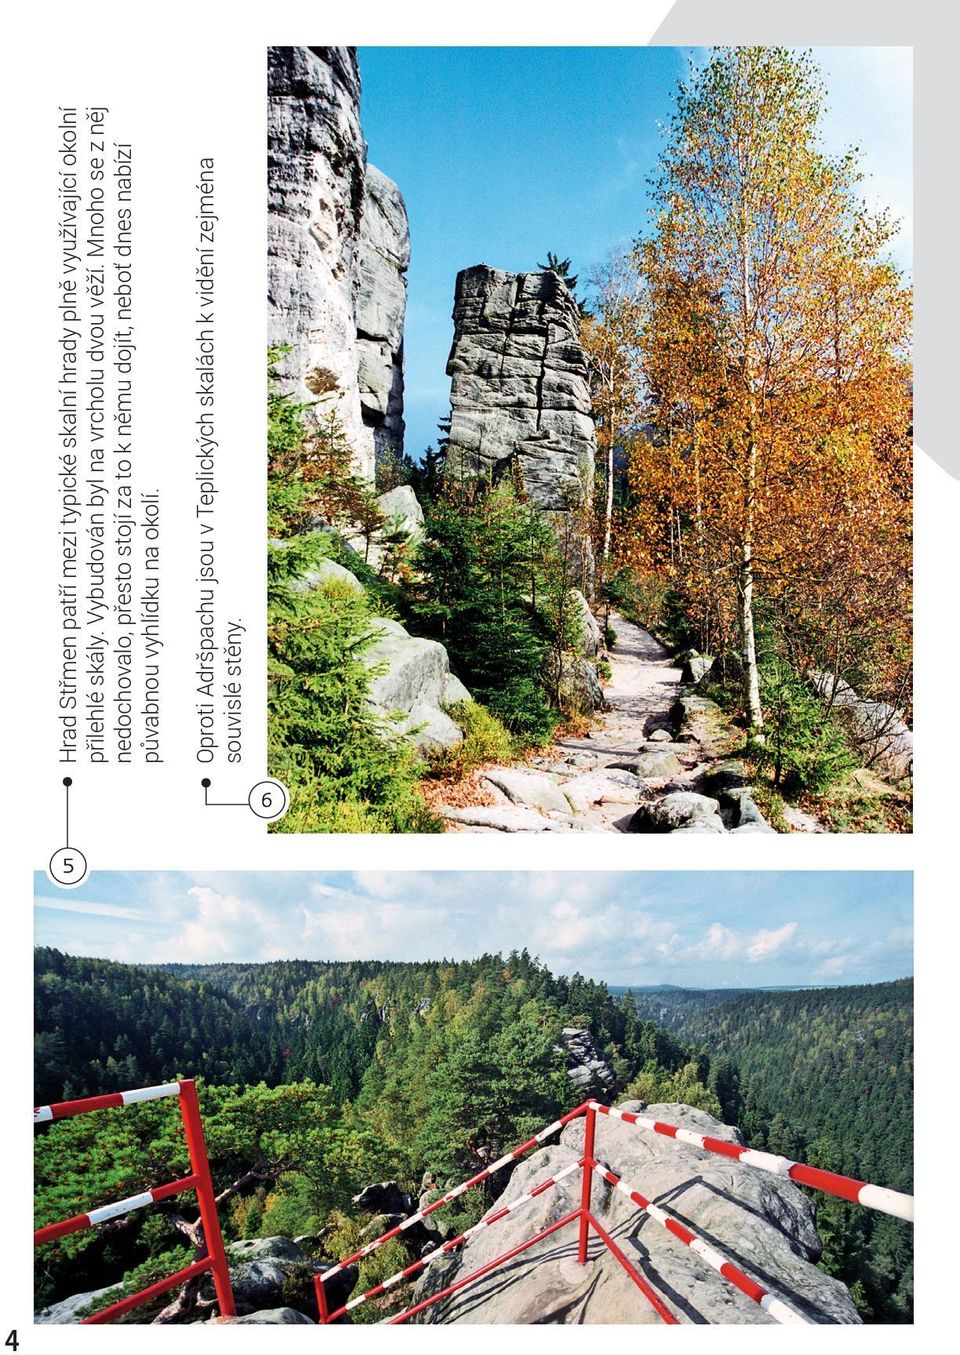 Hrad Střmen patří mezi typické skalní hrady plně využívající okolní přilehlé